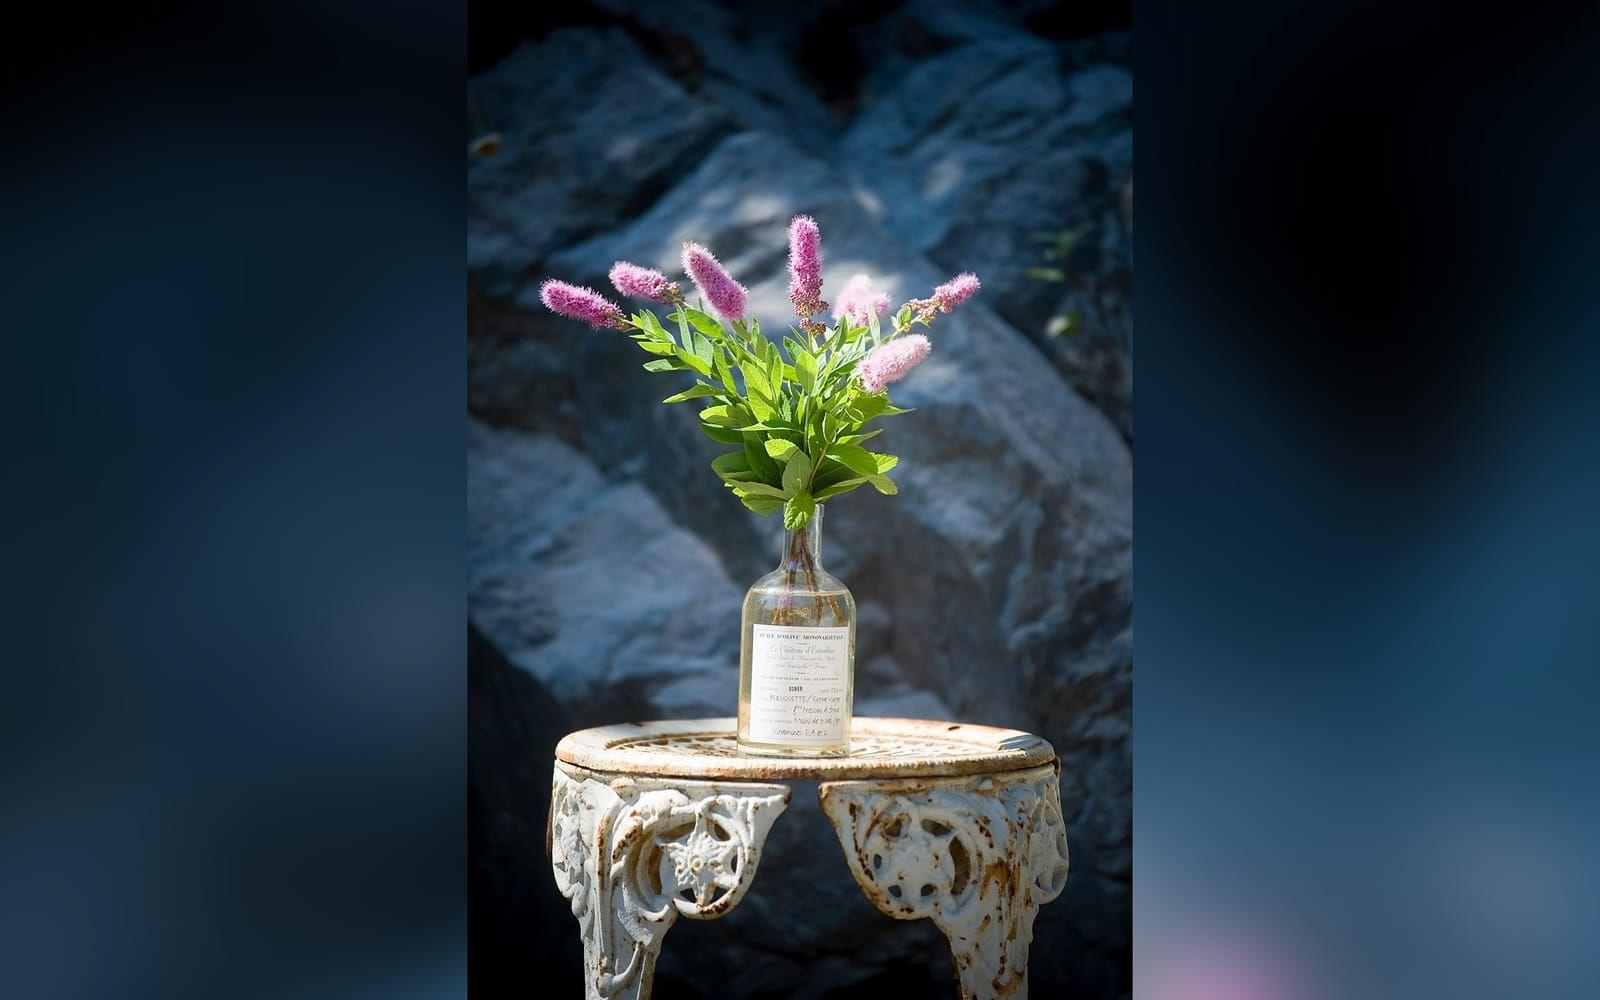 Antikt kafébord med blommor i flaska. Foto: David Magnusson/SvD/TT